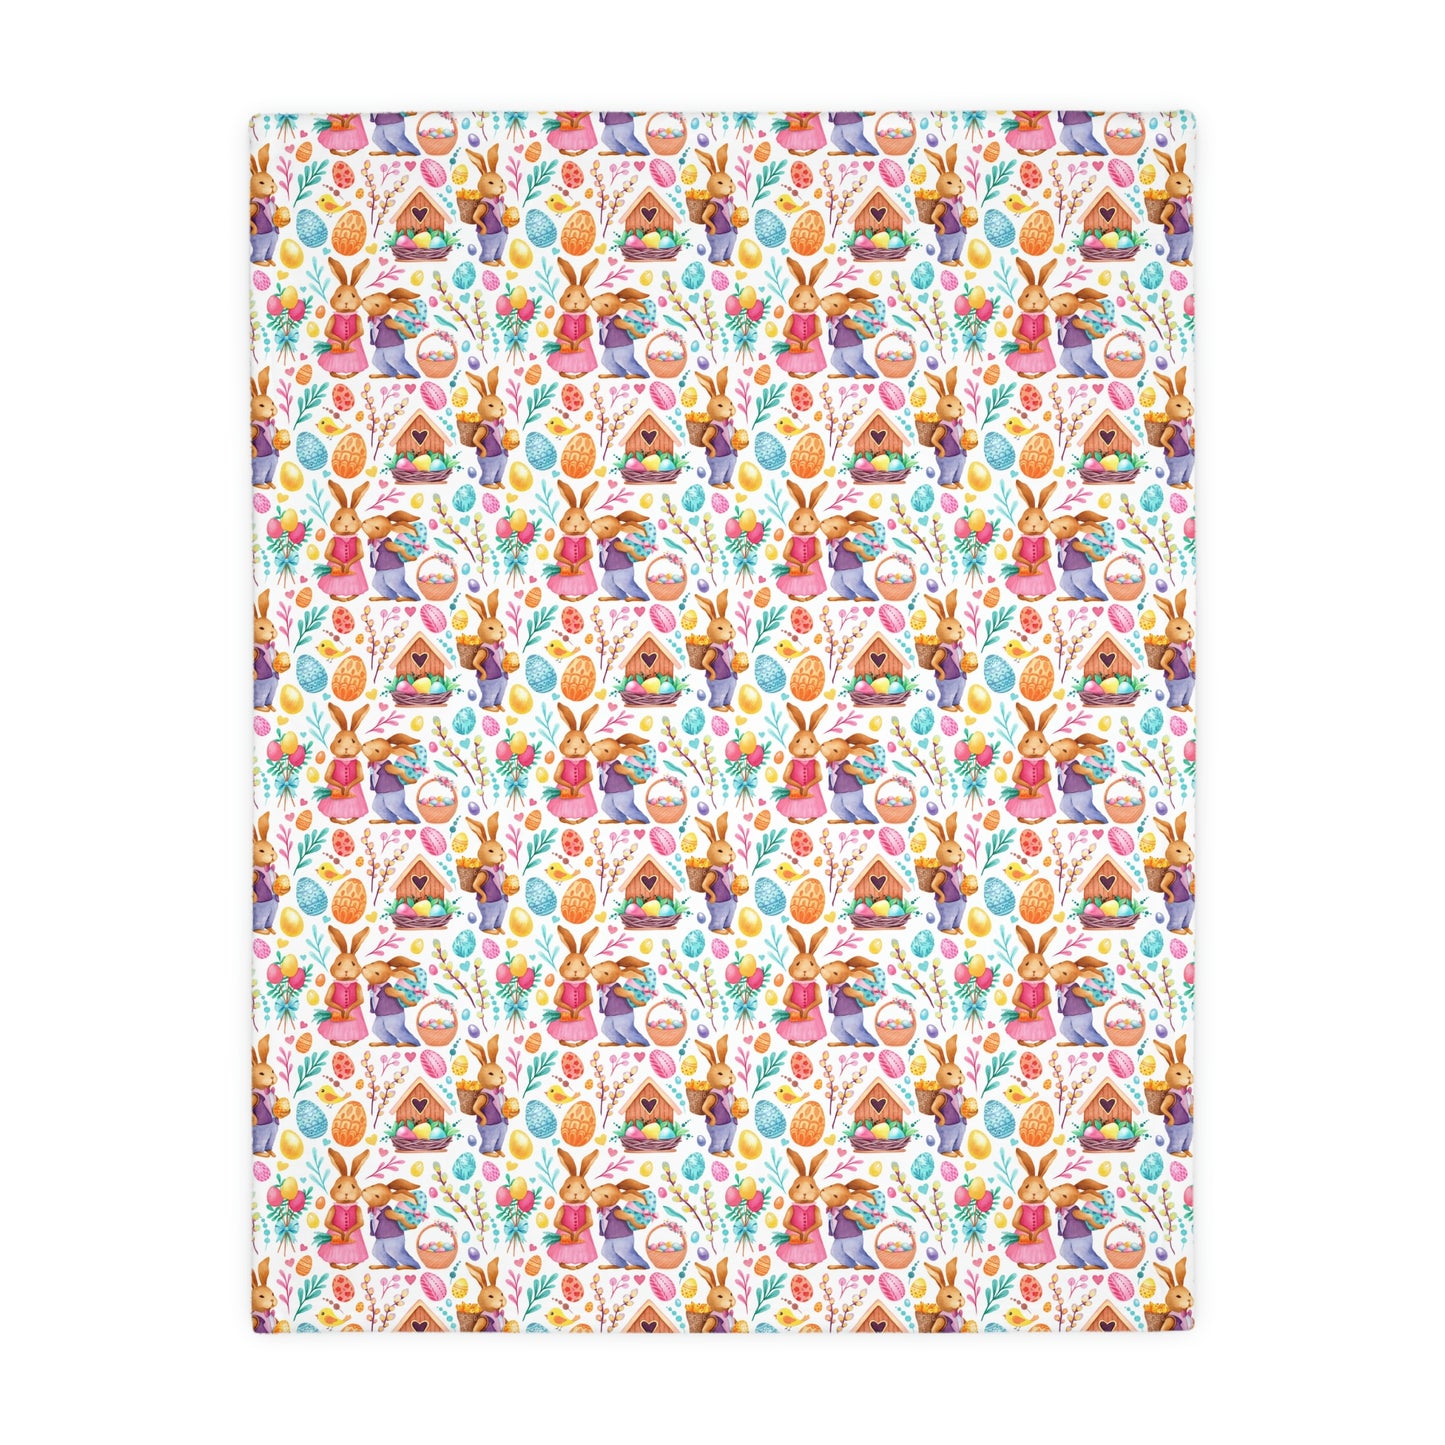 Easter Love Bunnies Velveteen Minky Blanket (Two-sided print)